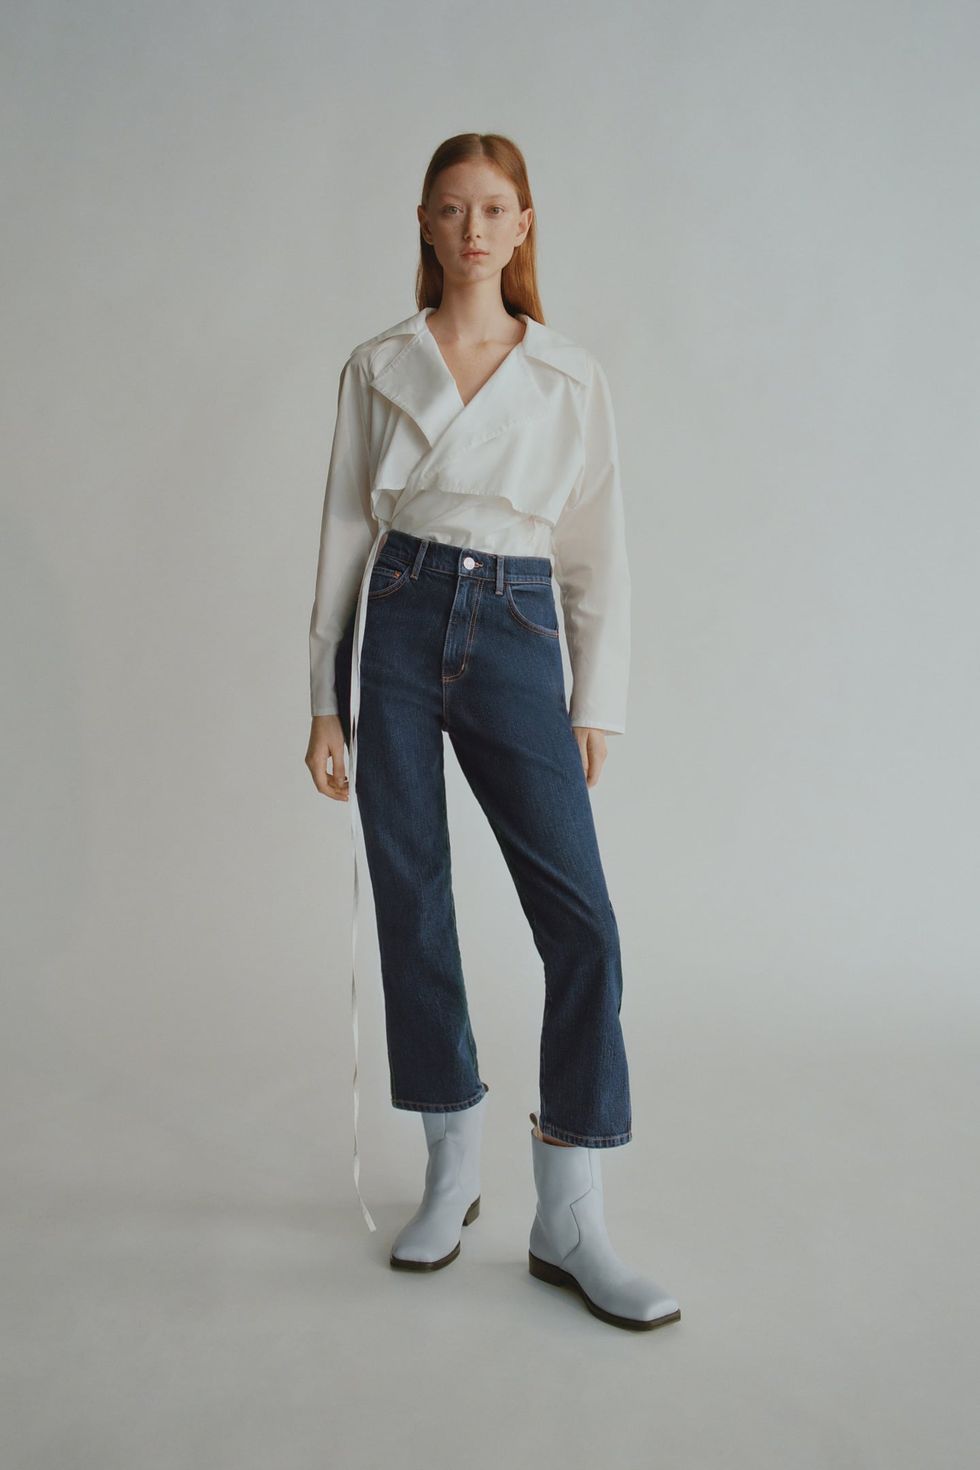 Nos apostamos lo que quieras a que estos pantalones de popelín y pinzas de  Zara no solo te van a quedar GENIAL, sino que van a ser (súper) tendencia  este verano 2019